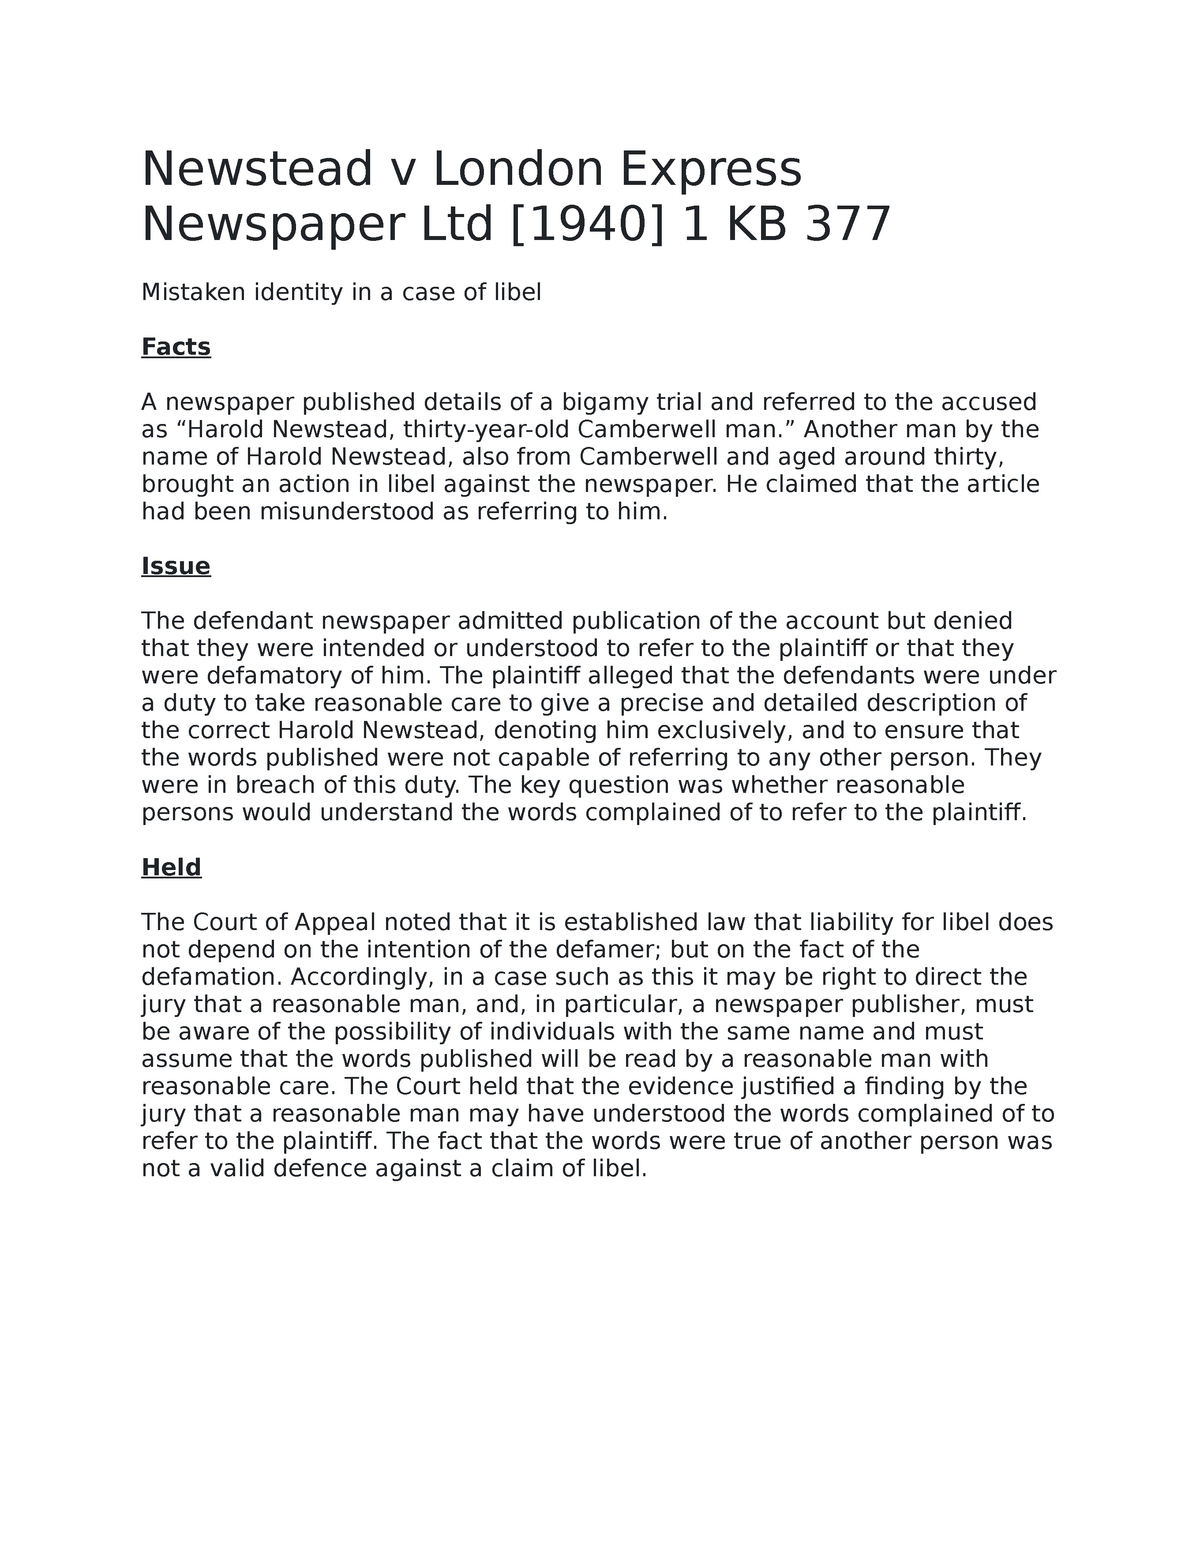 Newstead v London Express Newspaper Ltd - Newstead v London Express  Newspaper Ltd [1940] 1 KB 377 - Studocu